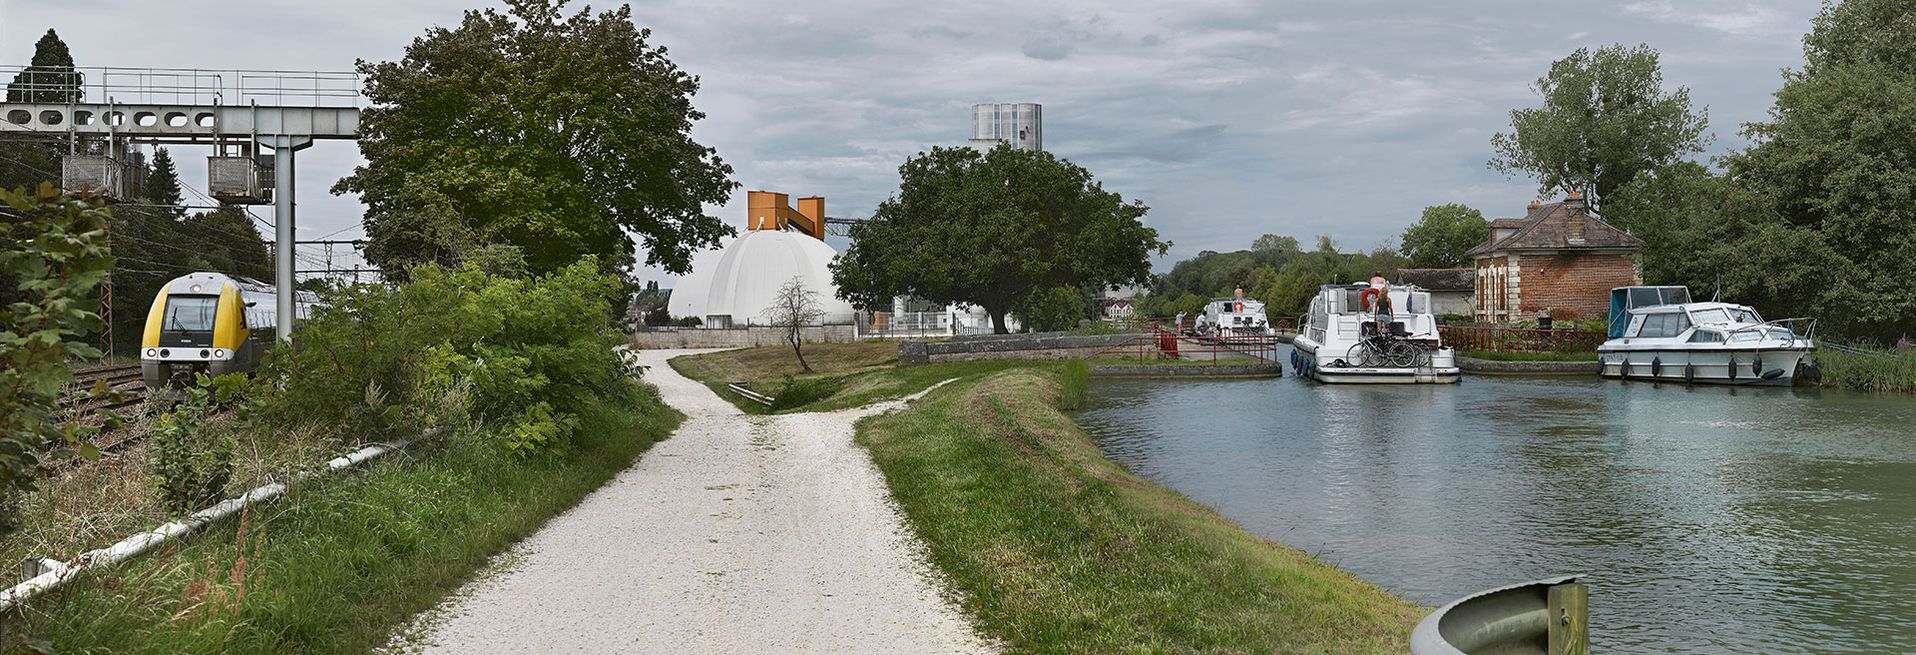 Vue d'ensemble de l'environnement du site de l'écluse 111 du versant Yonne à Brienon-sur-Armançon. De droite à gauche&nbsp;: la maison éclusière, le canal, un silo, la voie ferrée.